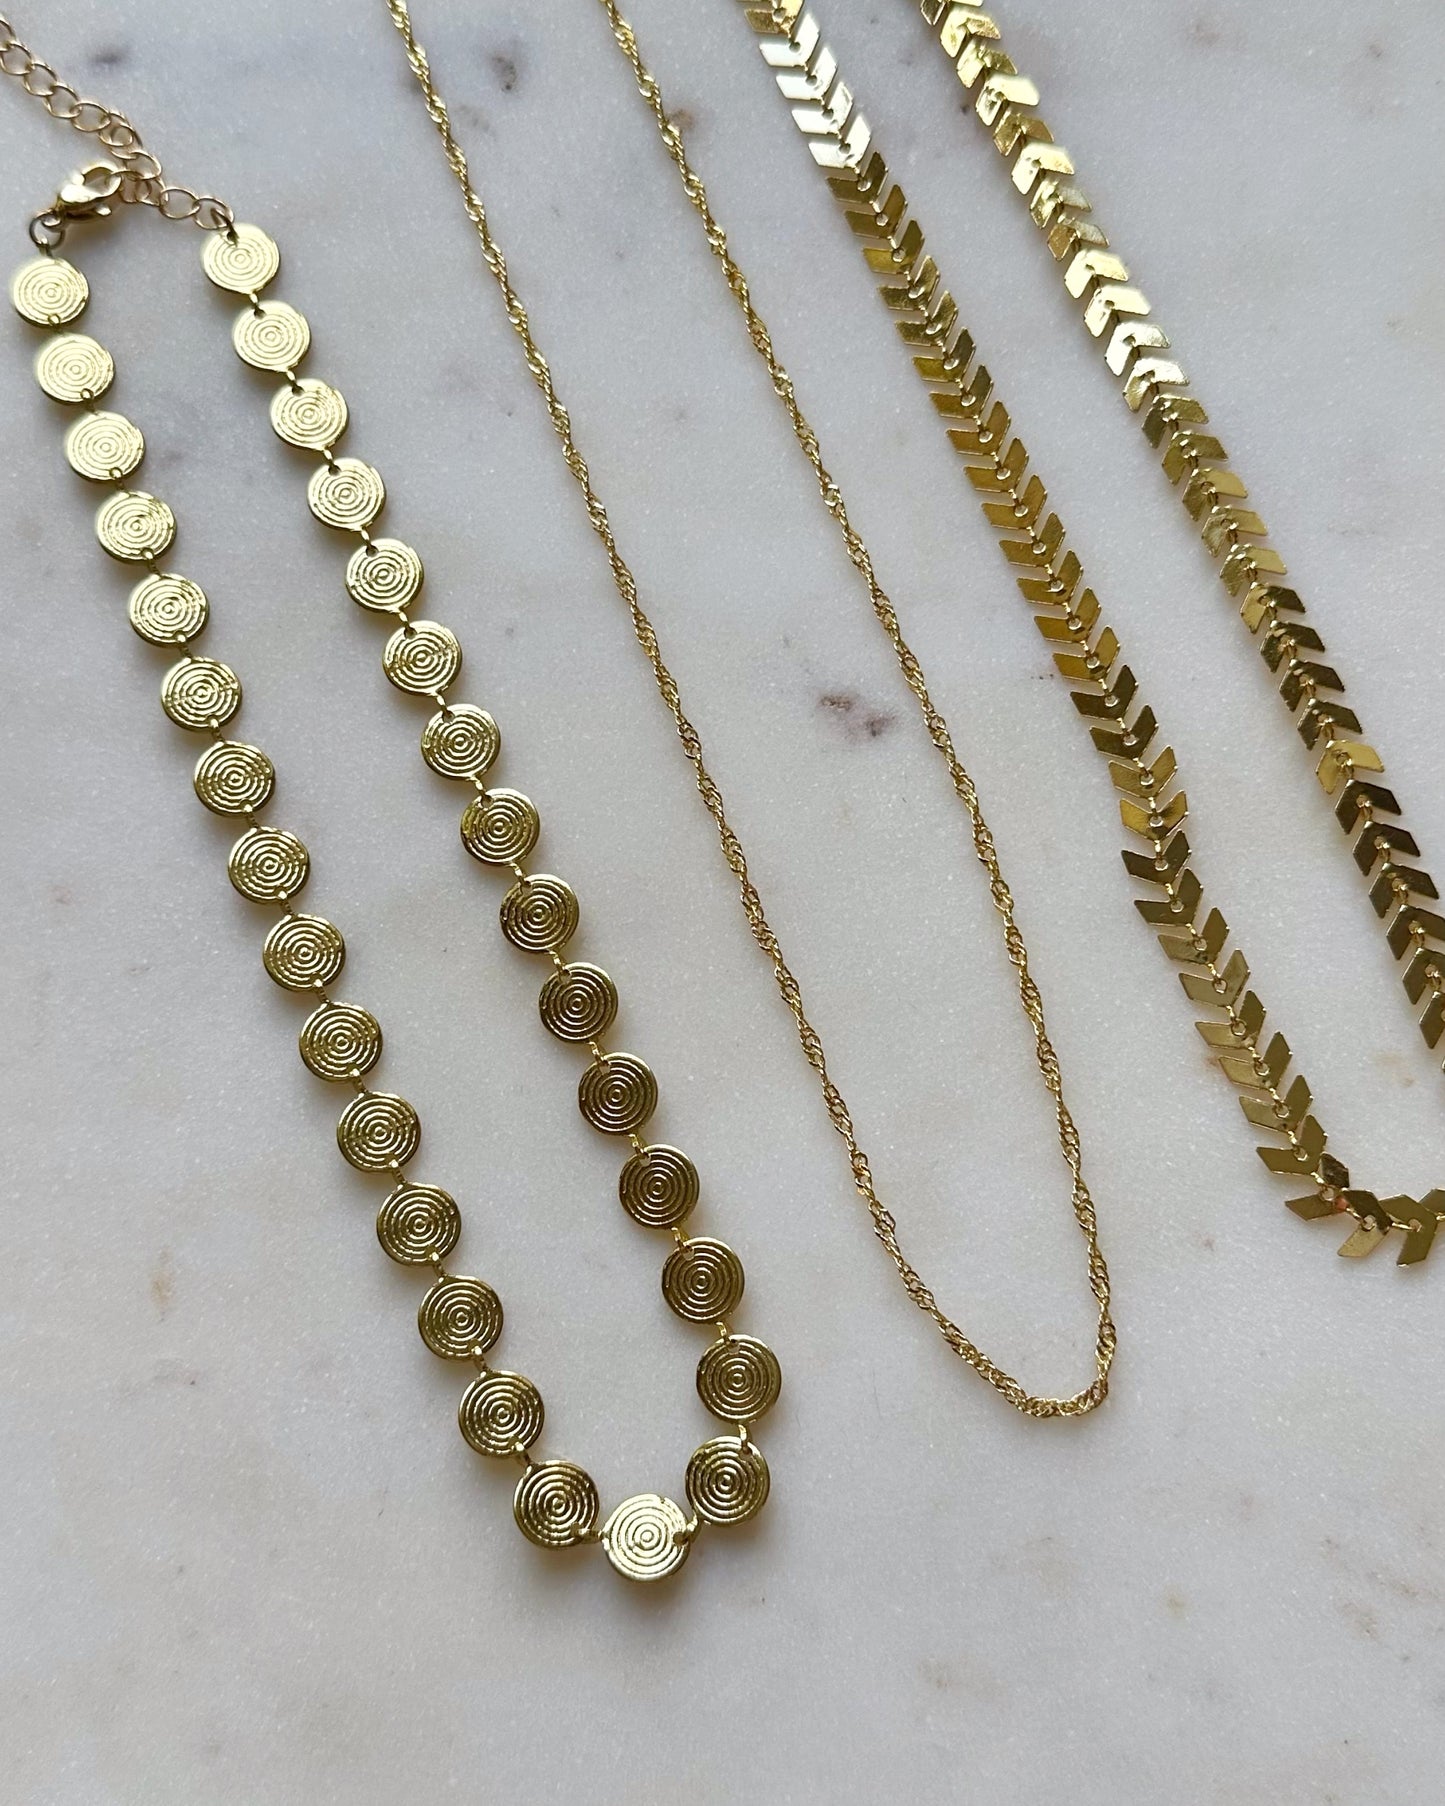 Golden Twist thin chain necklace